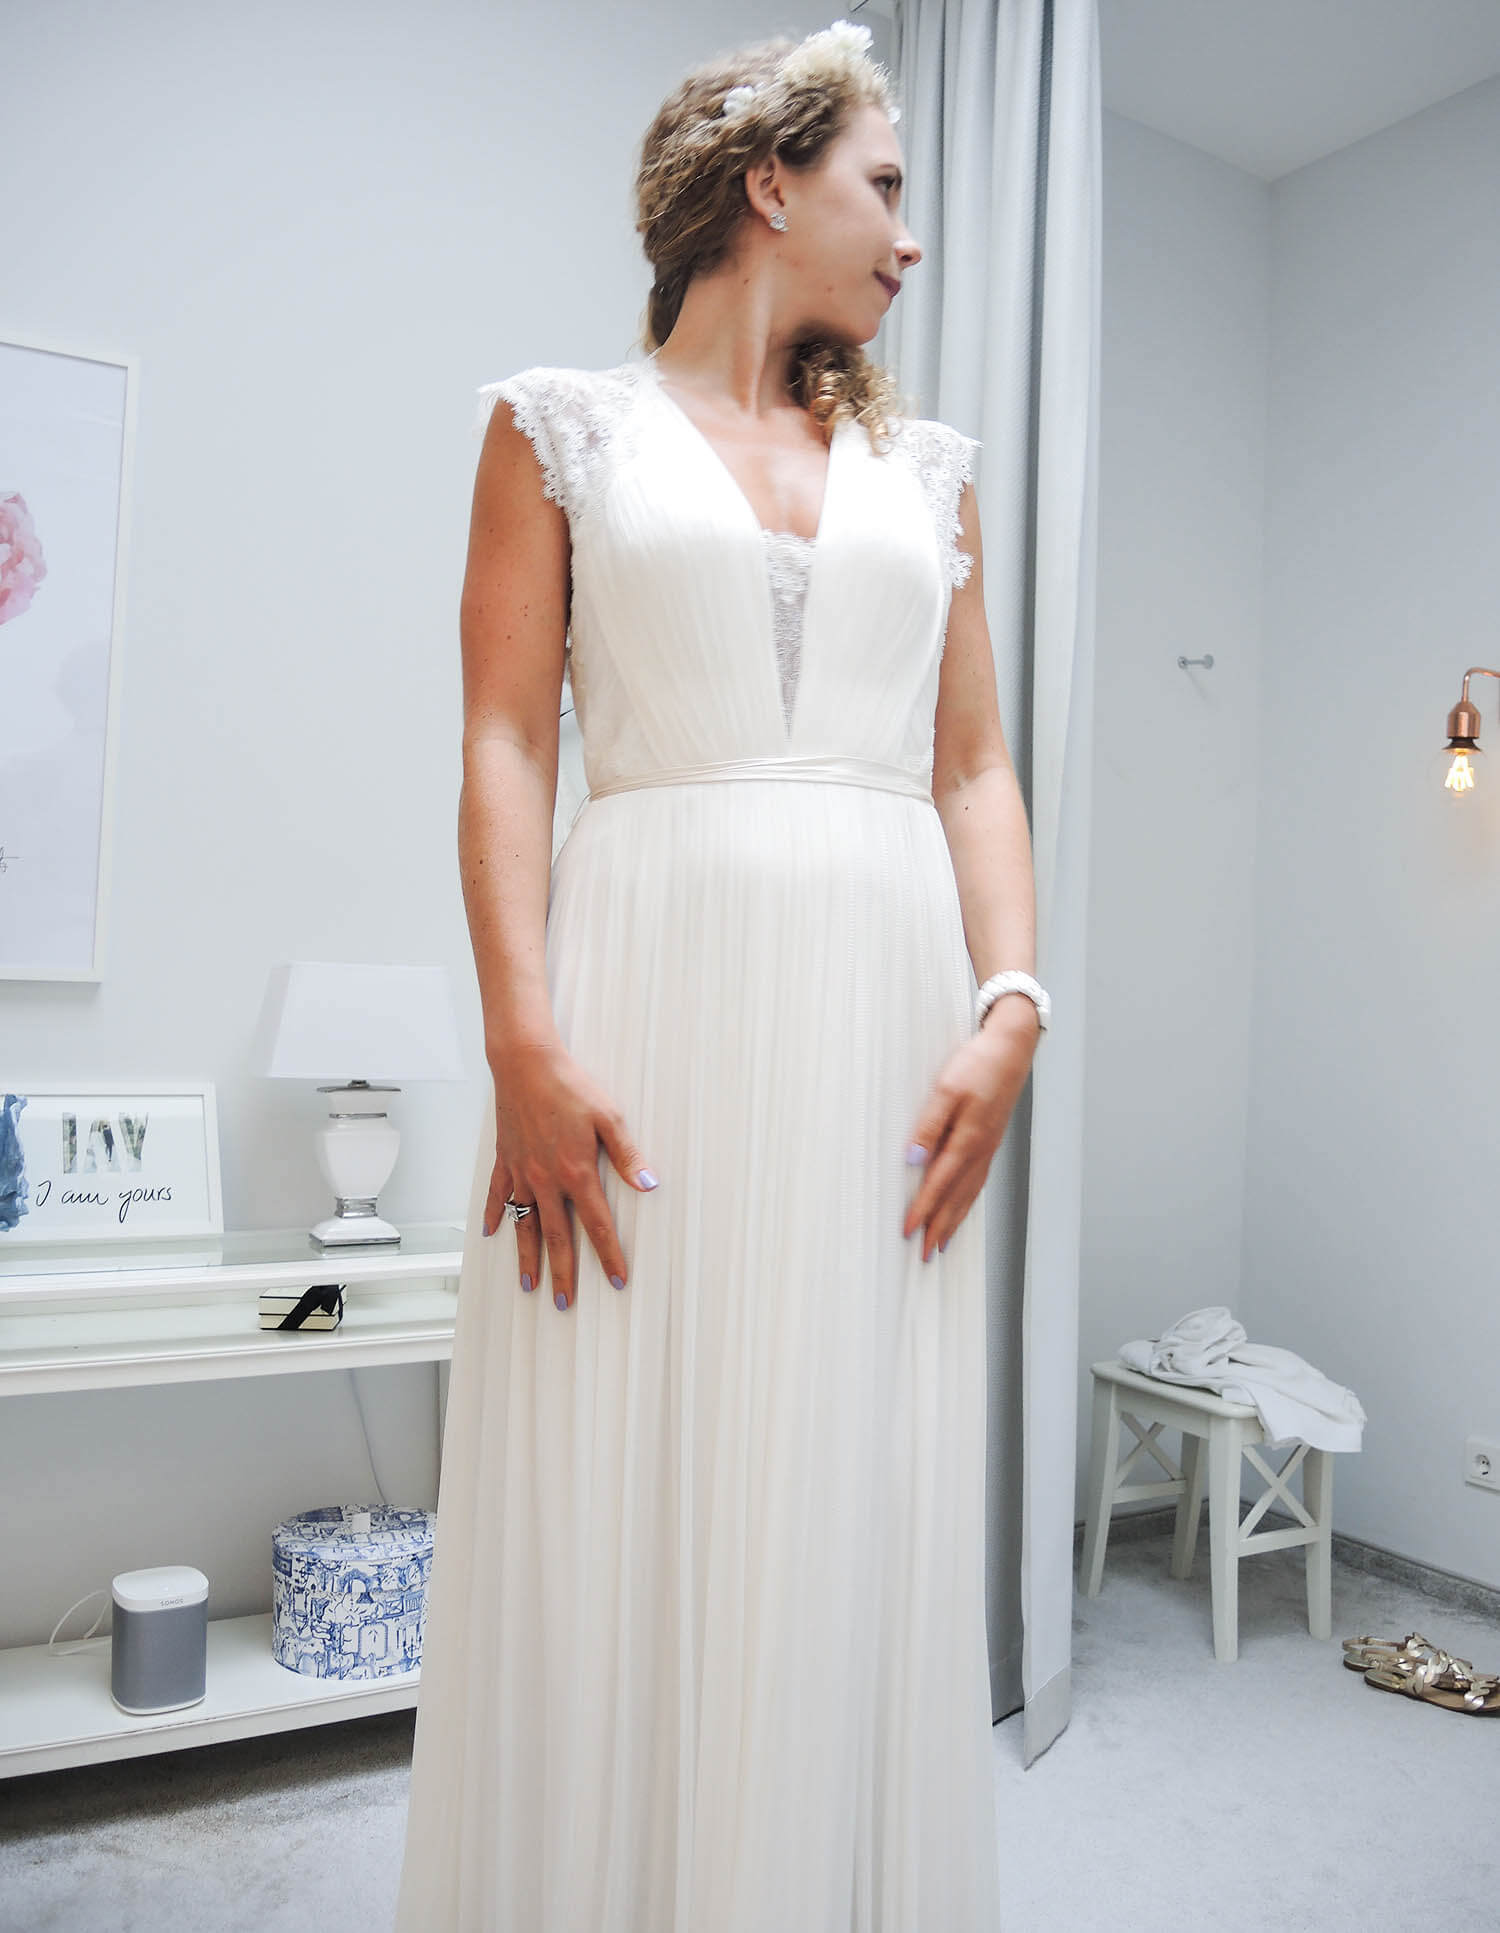 Kationette-fashionblog-lifestyle-Wedding-Update-Bride-Dress-fitting-IamYours-Dusseldorf